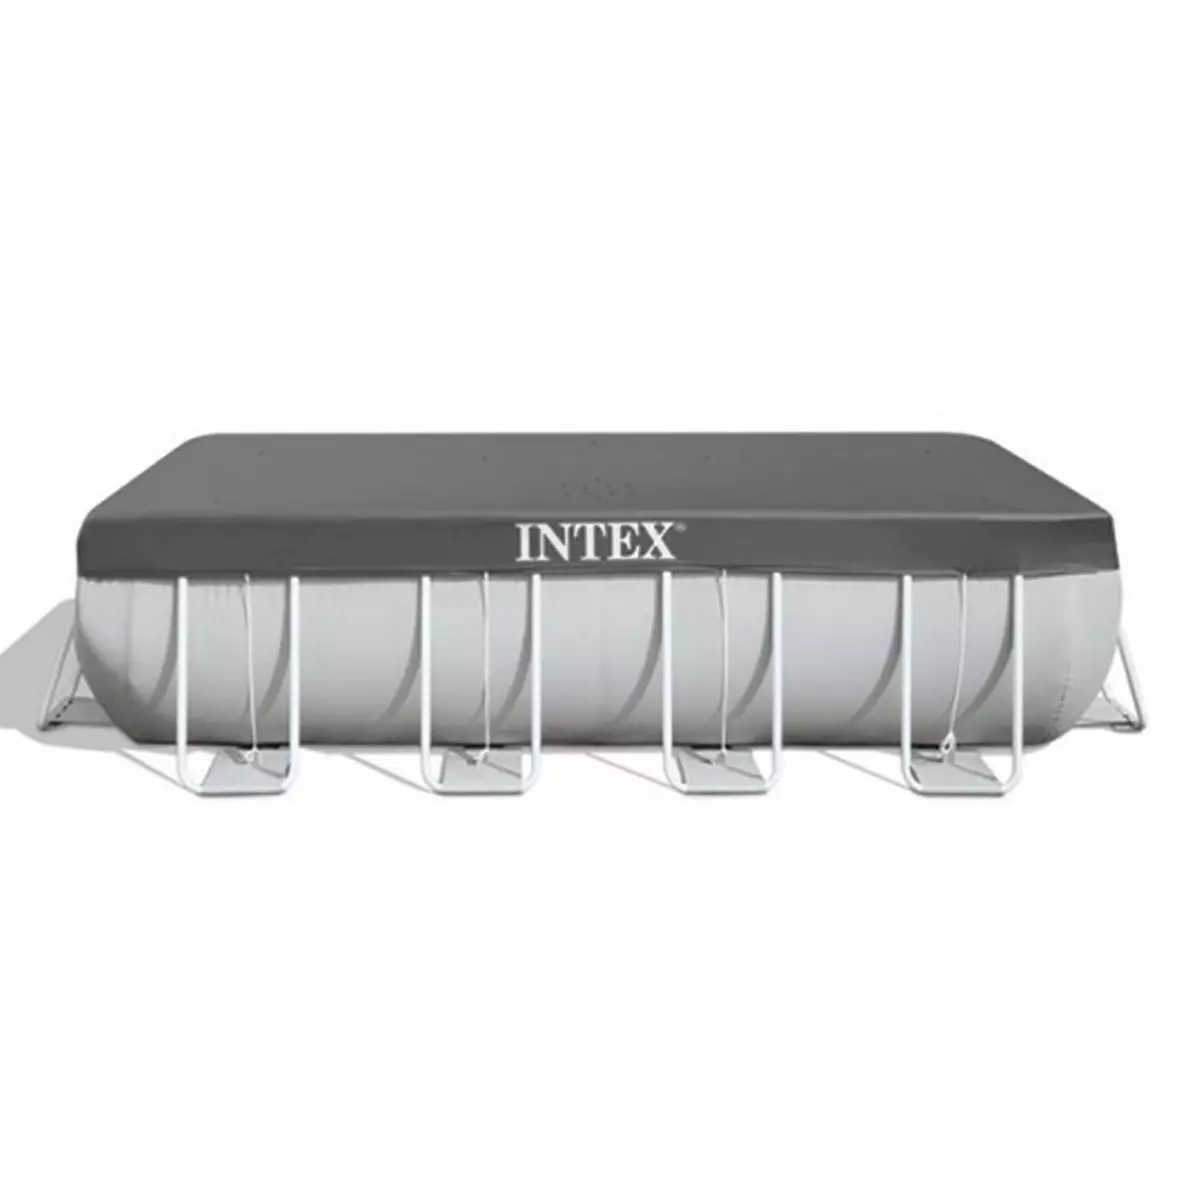 INTEX Bâche de protection pour piscine tubulaire rectangulaire 5,49 x 2,74 m - Intex